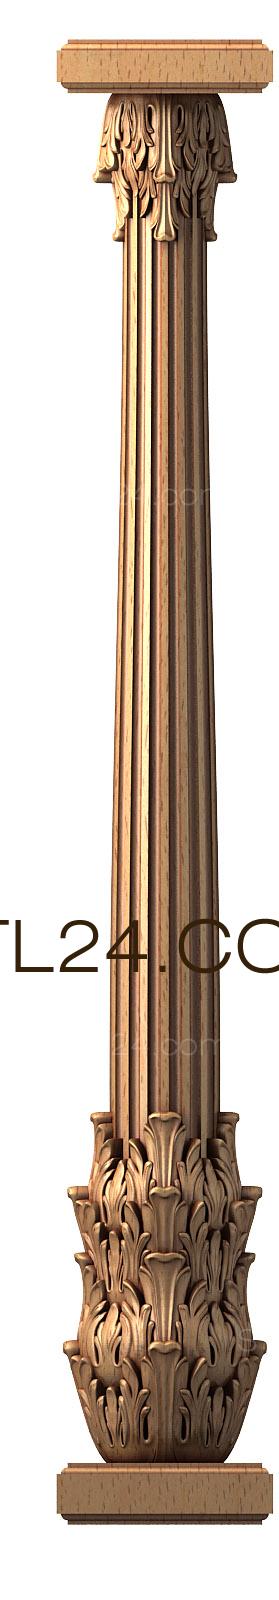 Колонны (3d stl модель колонны, файл для ЧПУ станка, KL_0006) 3D модель для ЧПУ станка